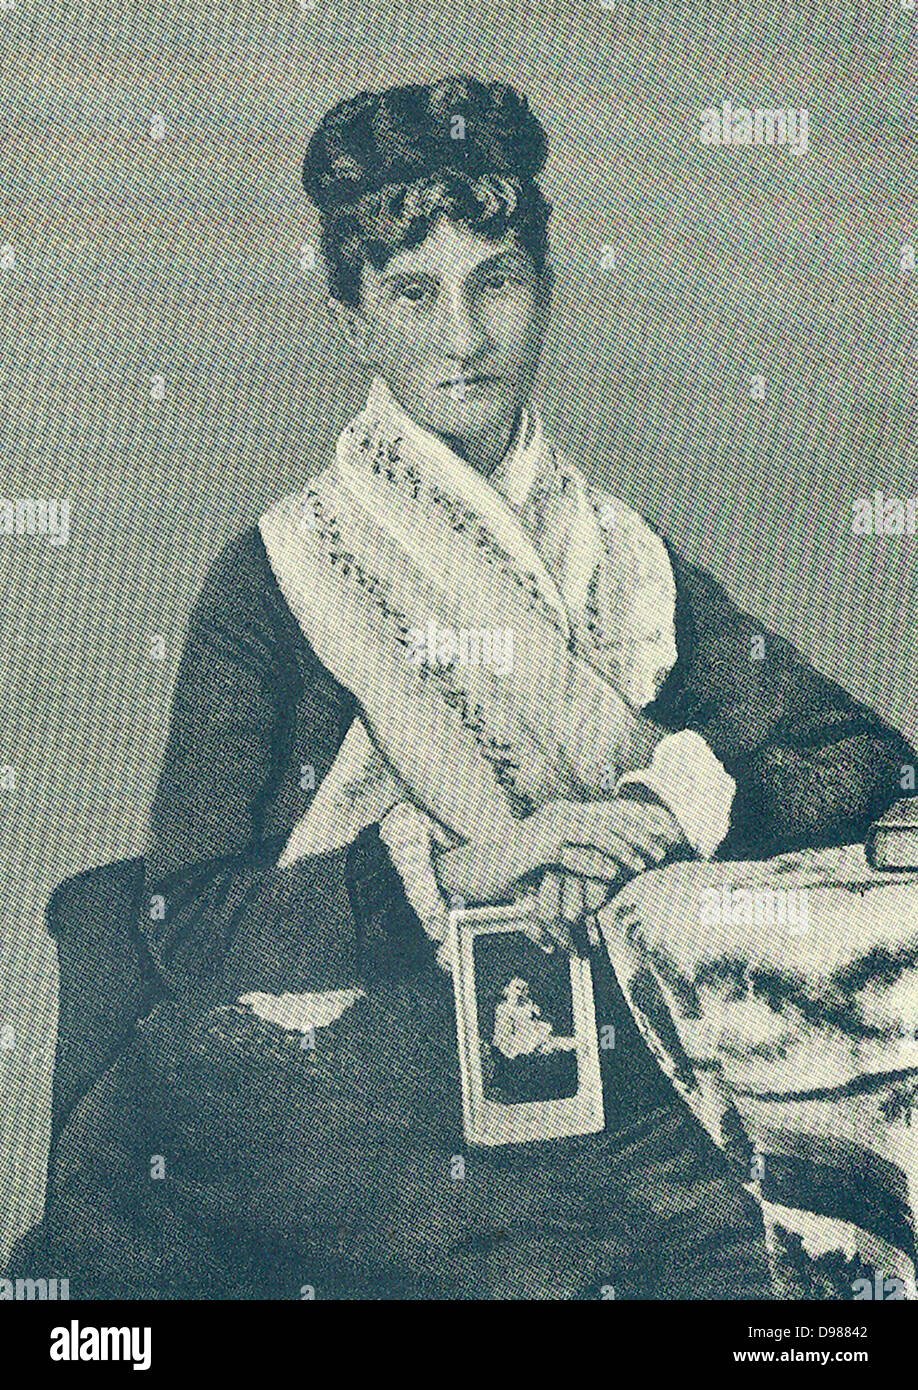 (Nadia) Nadeschda von Meck (1831 – 1894), russischen Geschäftsfrau und Patron von Tschaikowsky Stockfoto